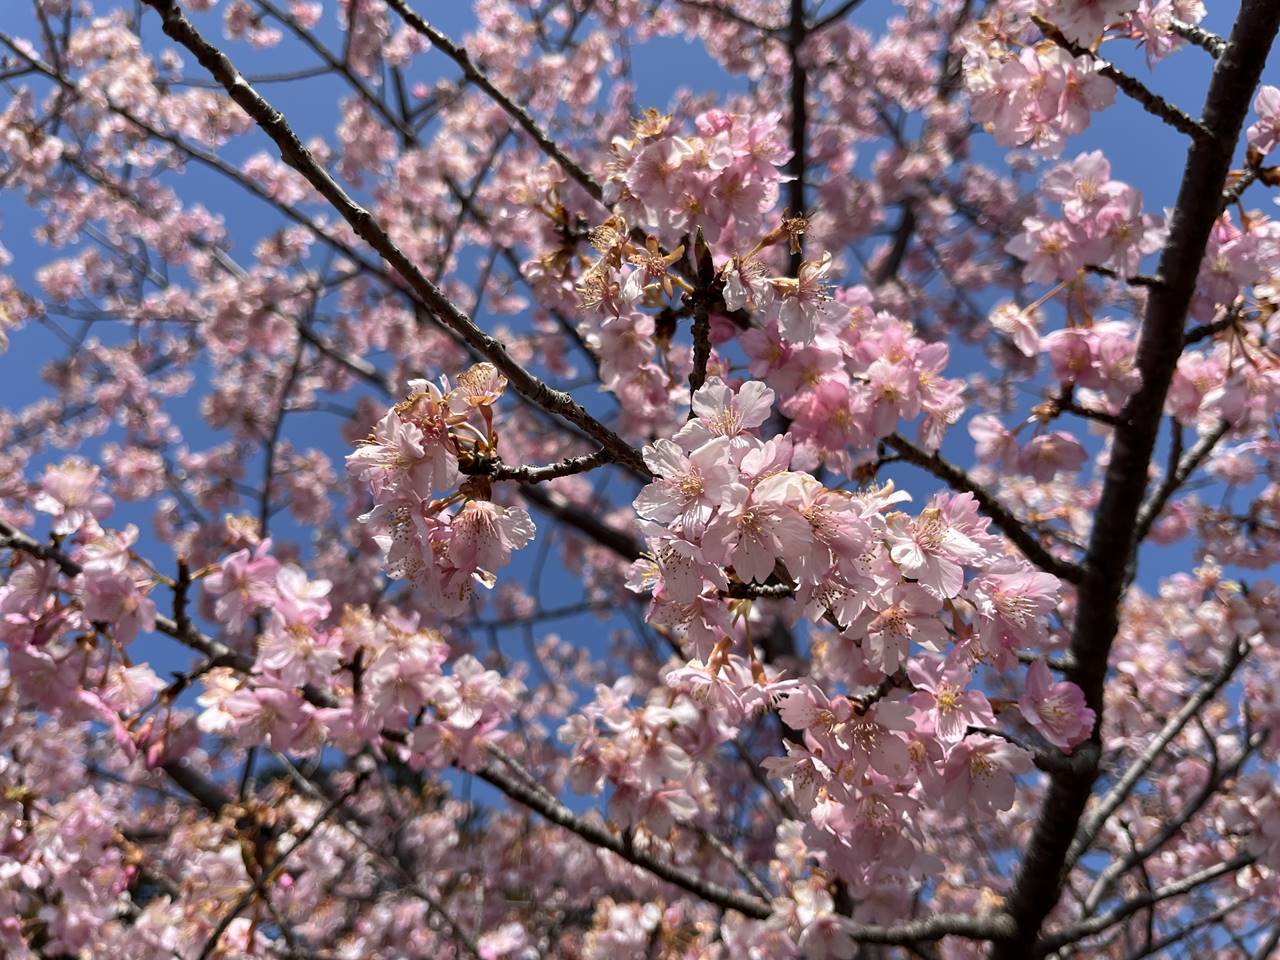 【神奈川】雨乞山 河津桜咲く春のハイキング